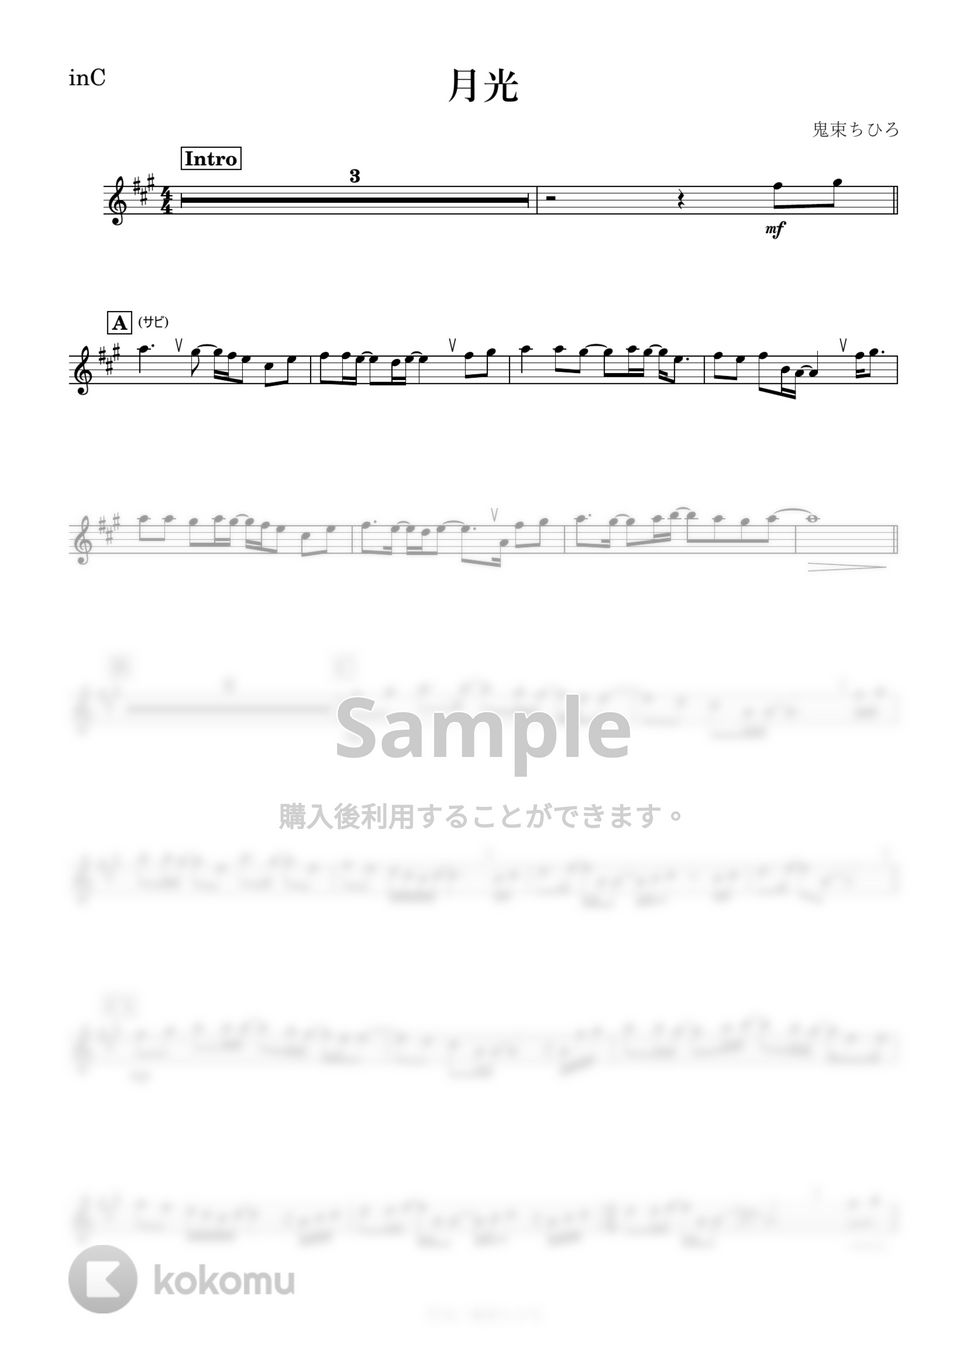 鬼束ちひろ - 月光 (C) by kanamusic